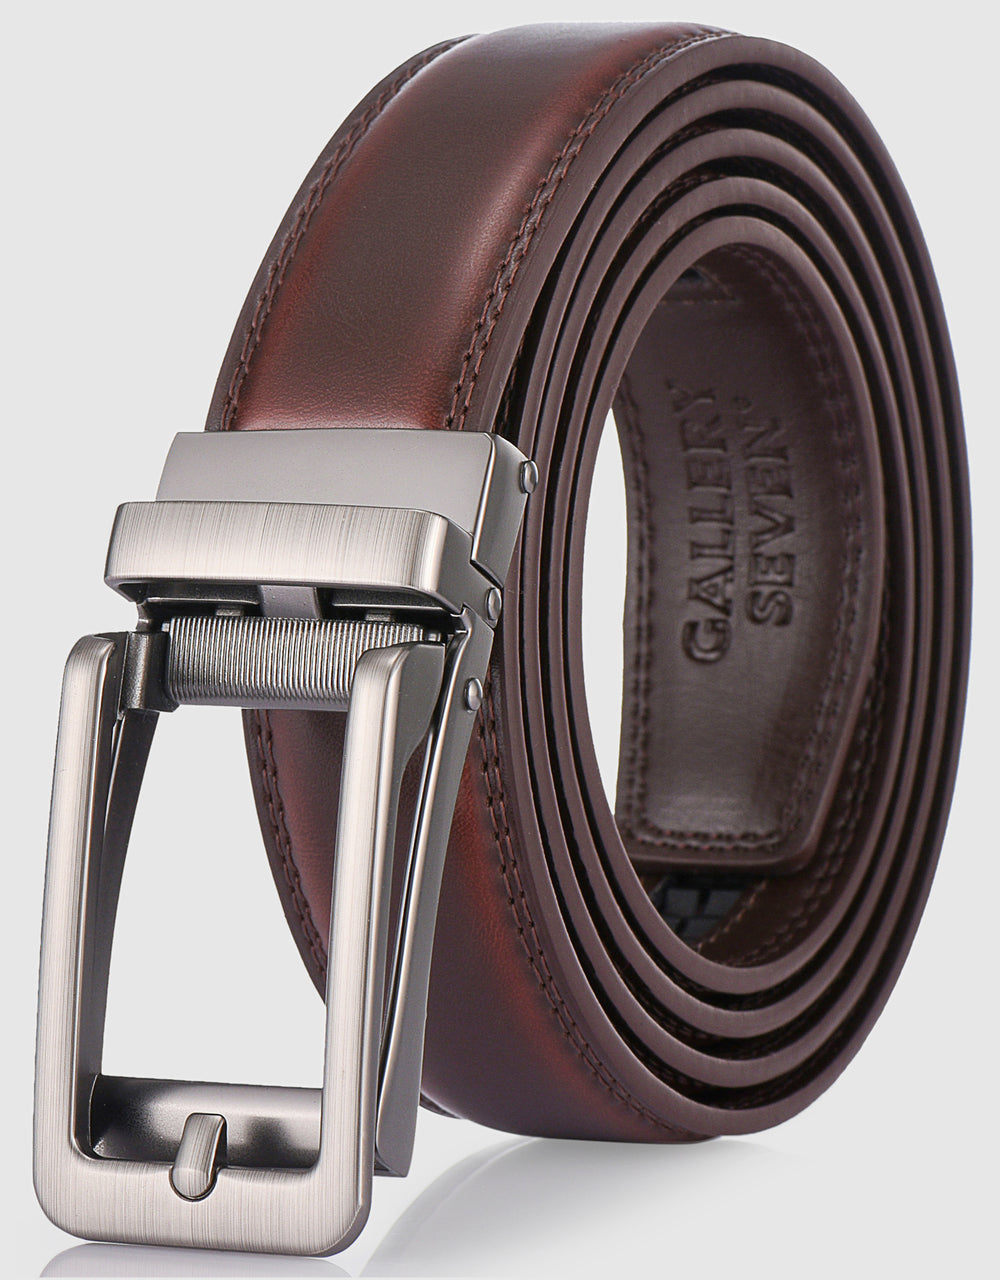 Gallery Seven Leather Click Belt , Adjustable Ratchet Belt For Men